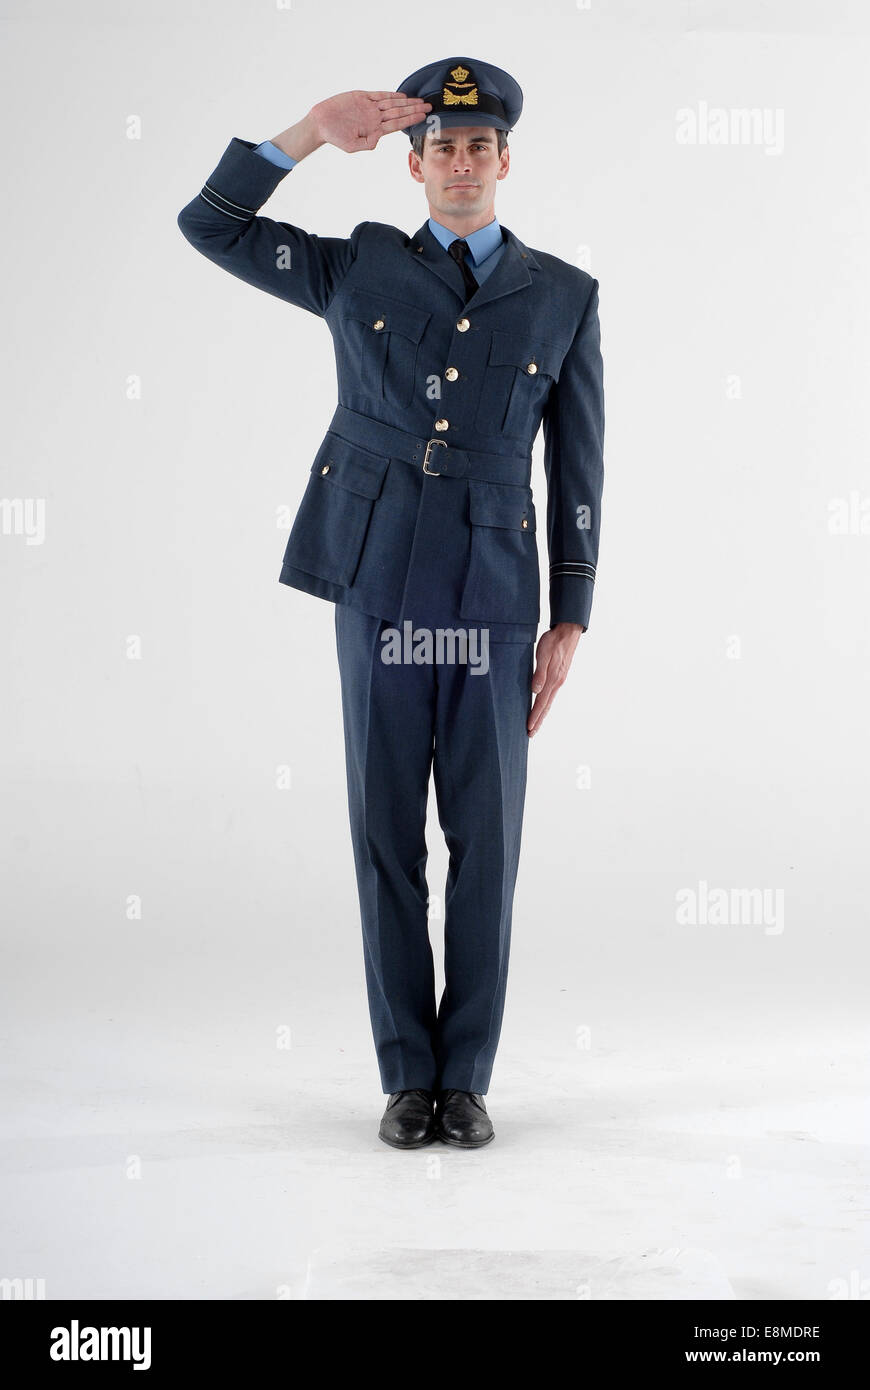 L'homme en costume de comédie comme un pilote de chasse de la Royal Air Force, le capitaine en uniforme militaire Banque D'Images